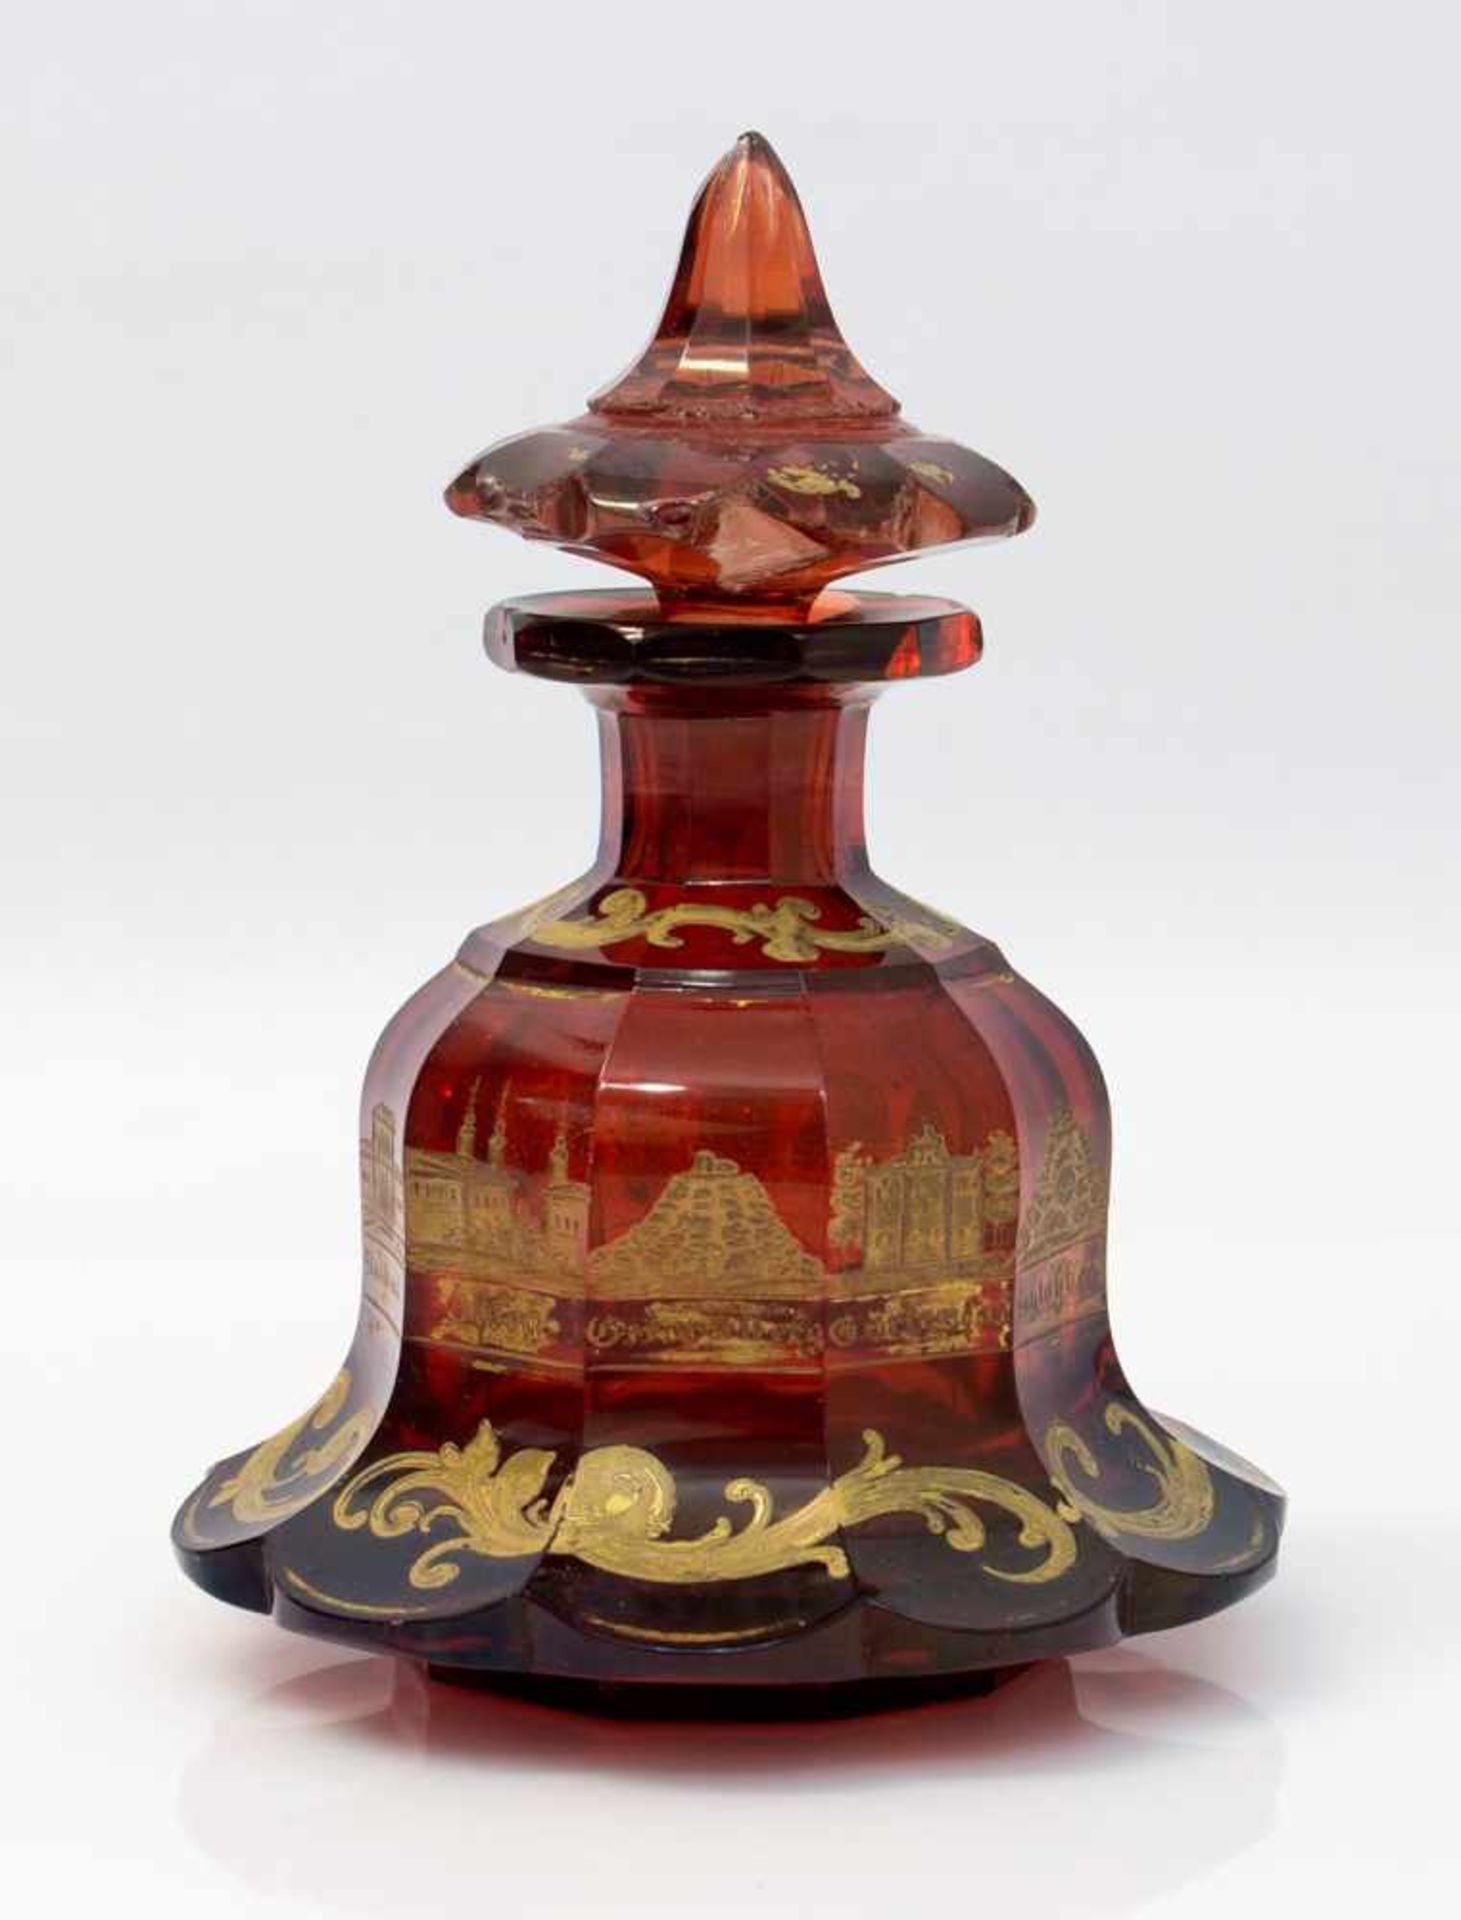 Biedermeierflakon wahrsch. Buquoy´sche Hütte um 1830, Pagodenform, rotes Hyalith-Glas, facettierte